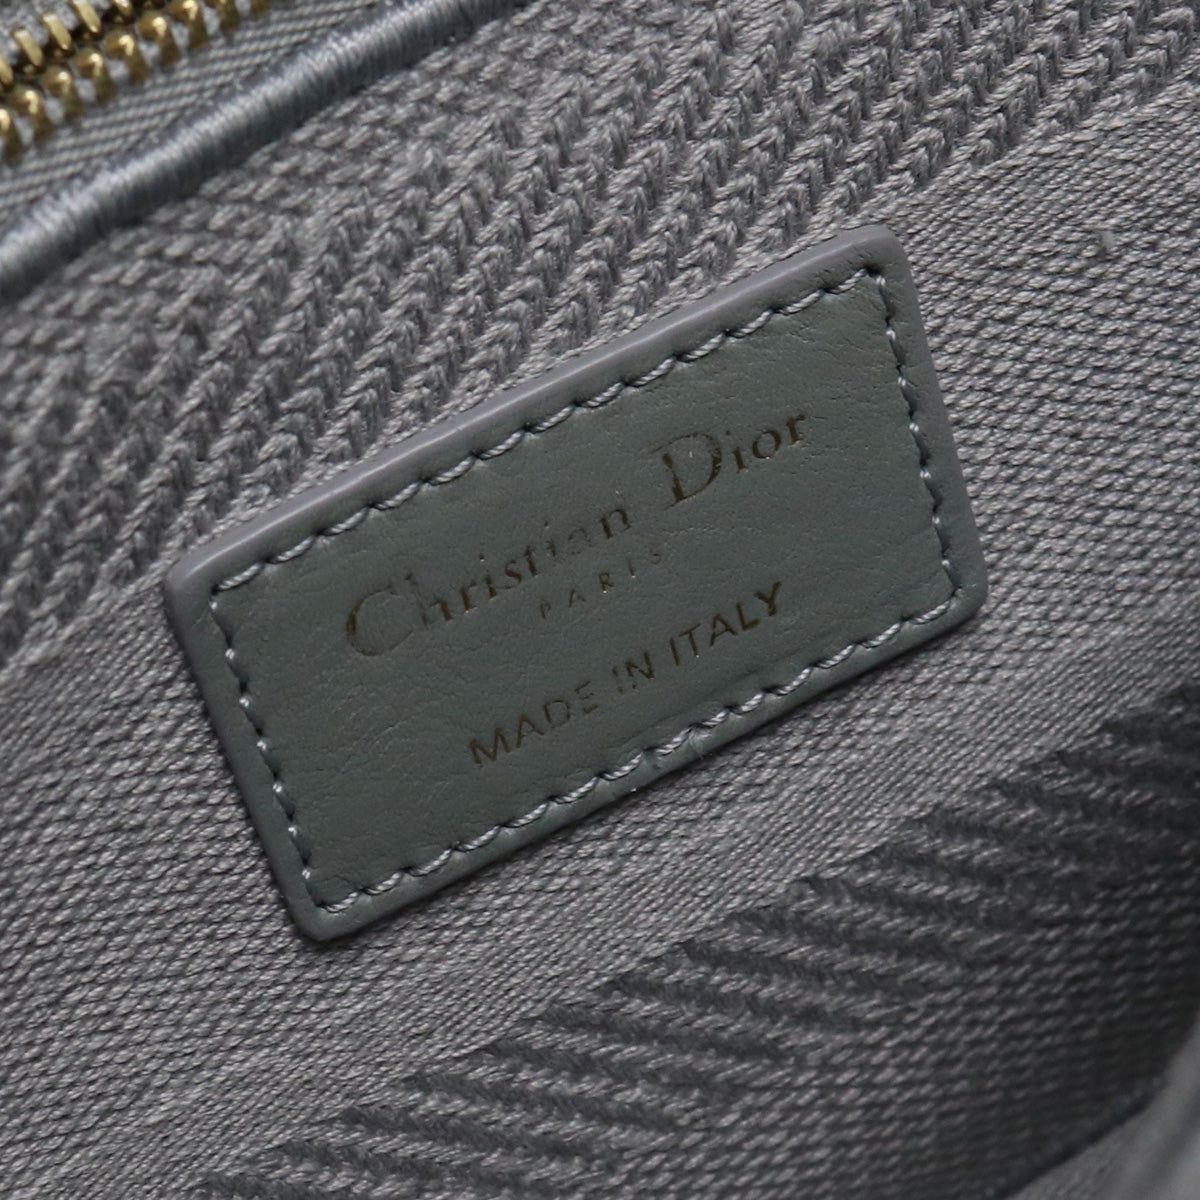 Christian Dior クリスチャンディオール LITEミディアムバッグ レディディオール M0565 OREY M950 ハンドバッグ【中古】 レディース